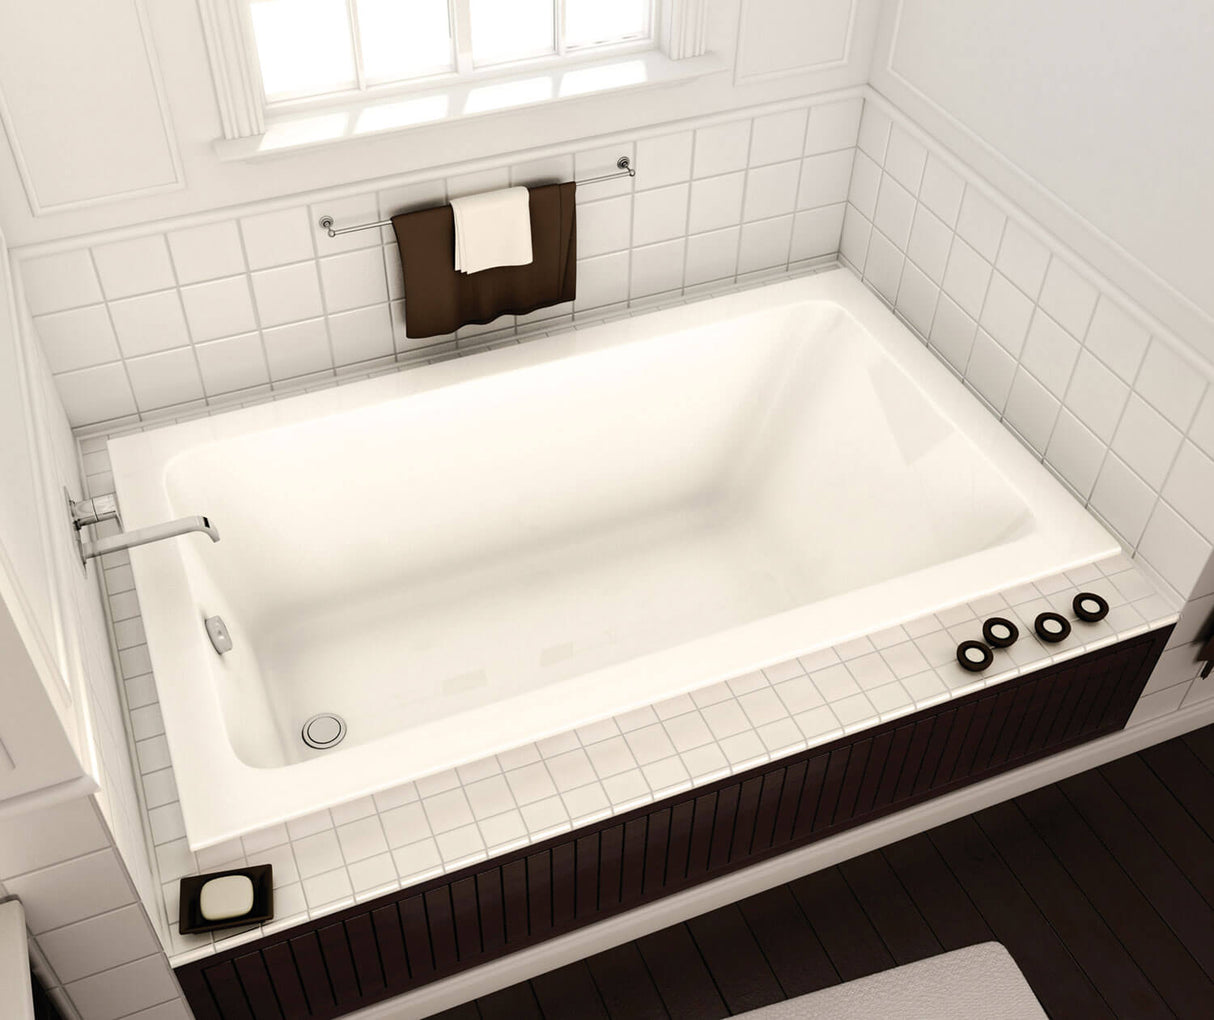 MAAX 101458-003-001-100 Pose 6632 Acrylic Drop-in End Drain Whirlpool Bathtub in White